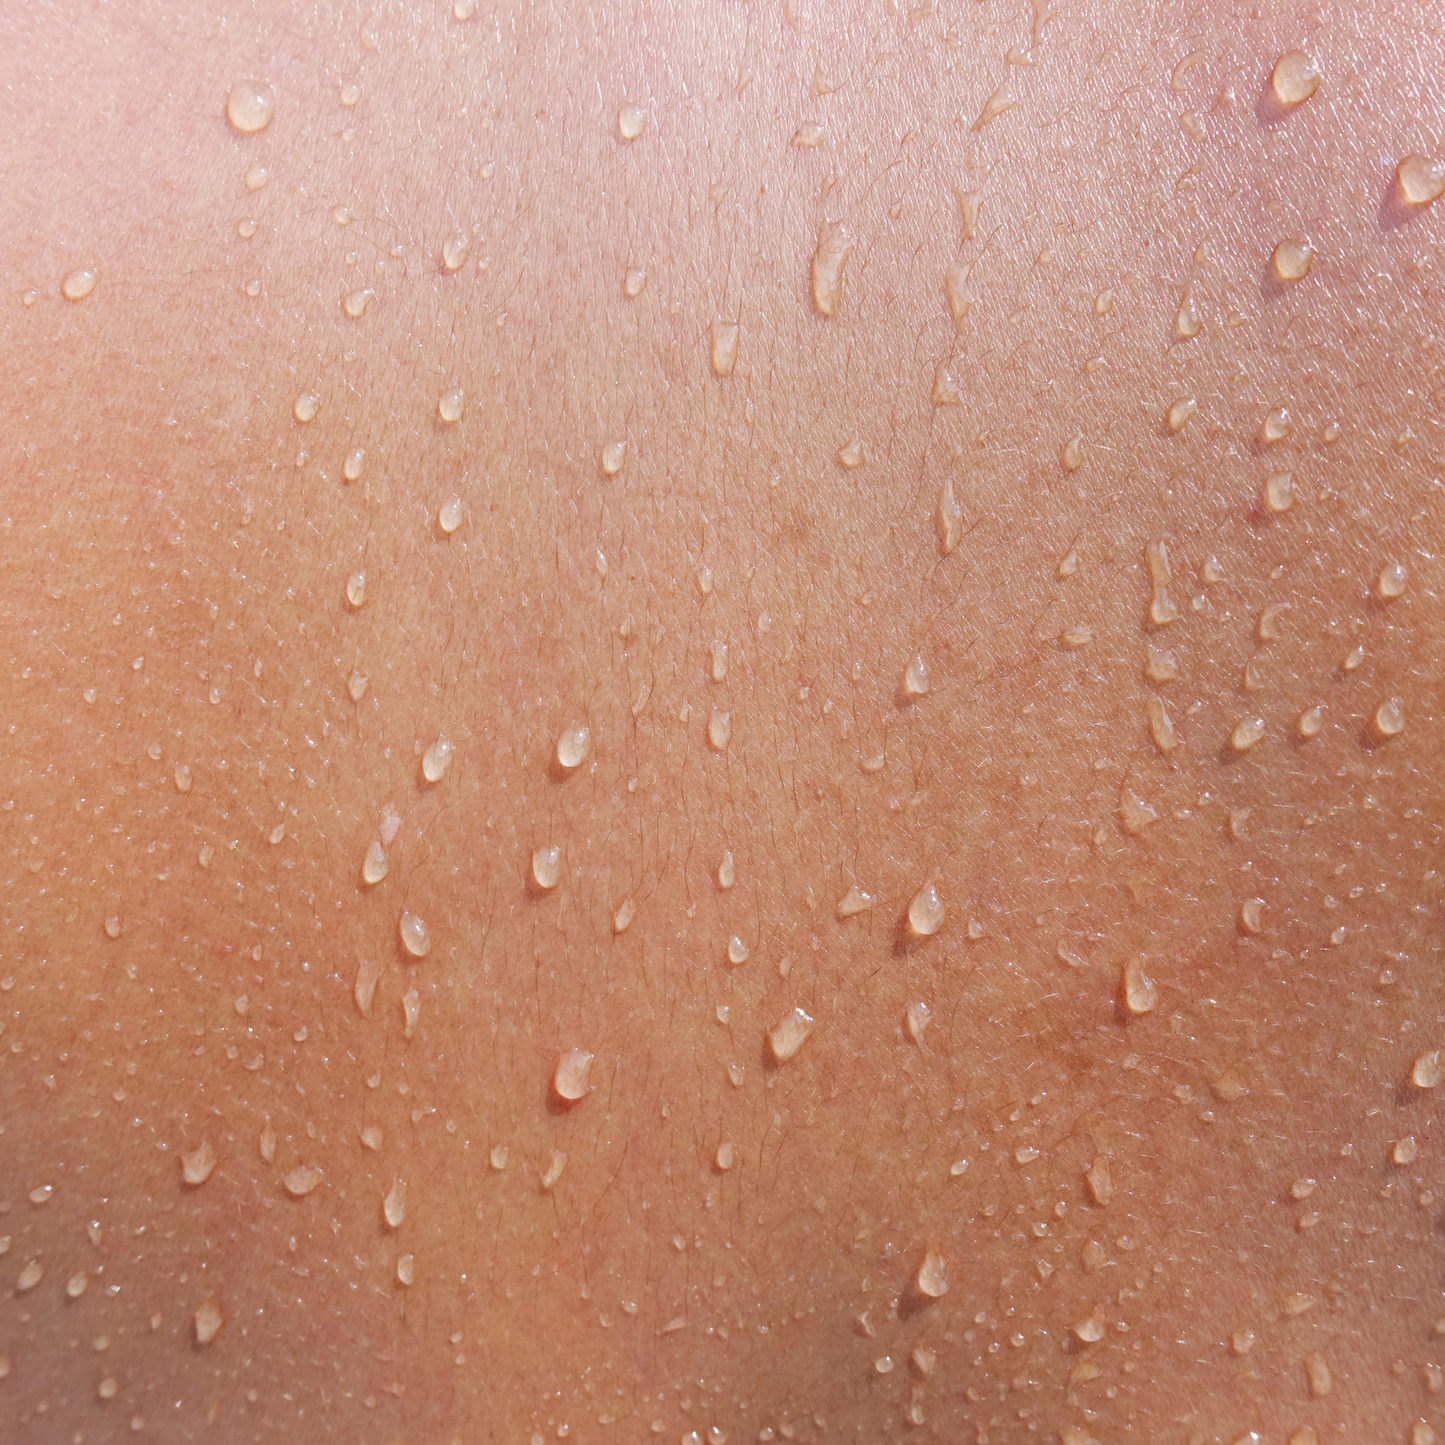 Oleogel N by Dermaviduals - inflammatory skin disorders like dermatitis